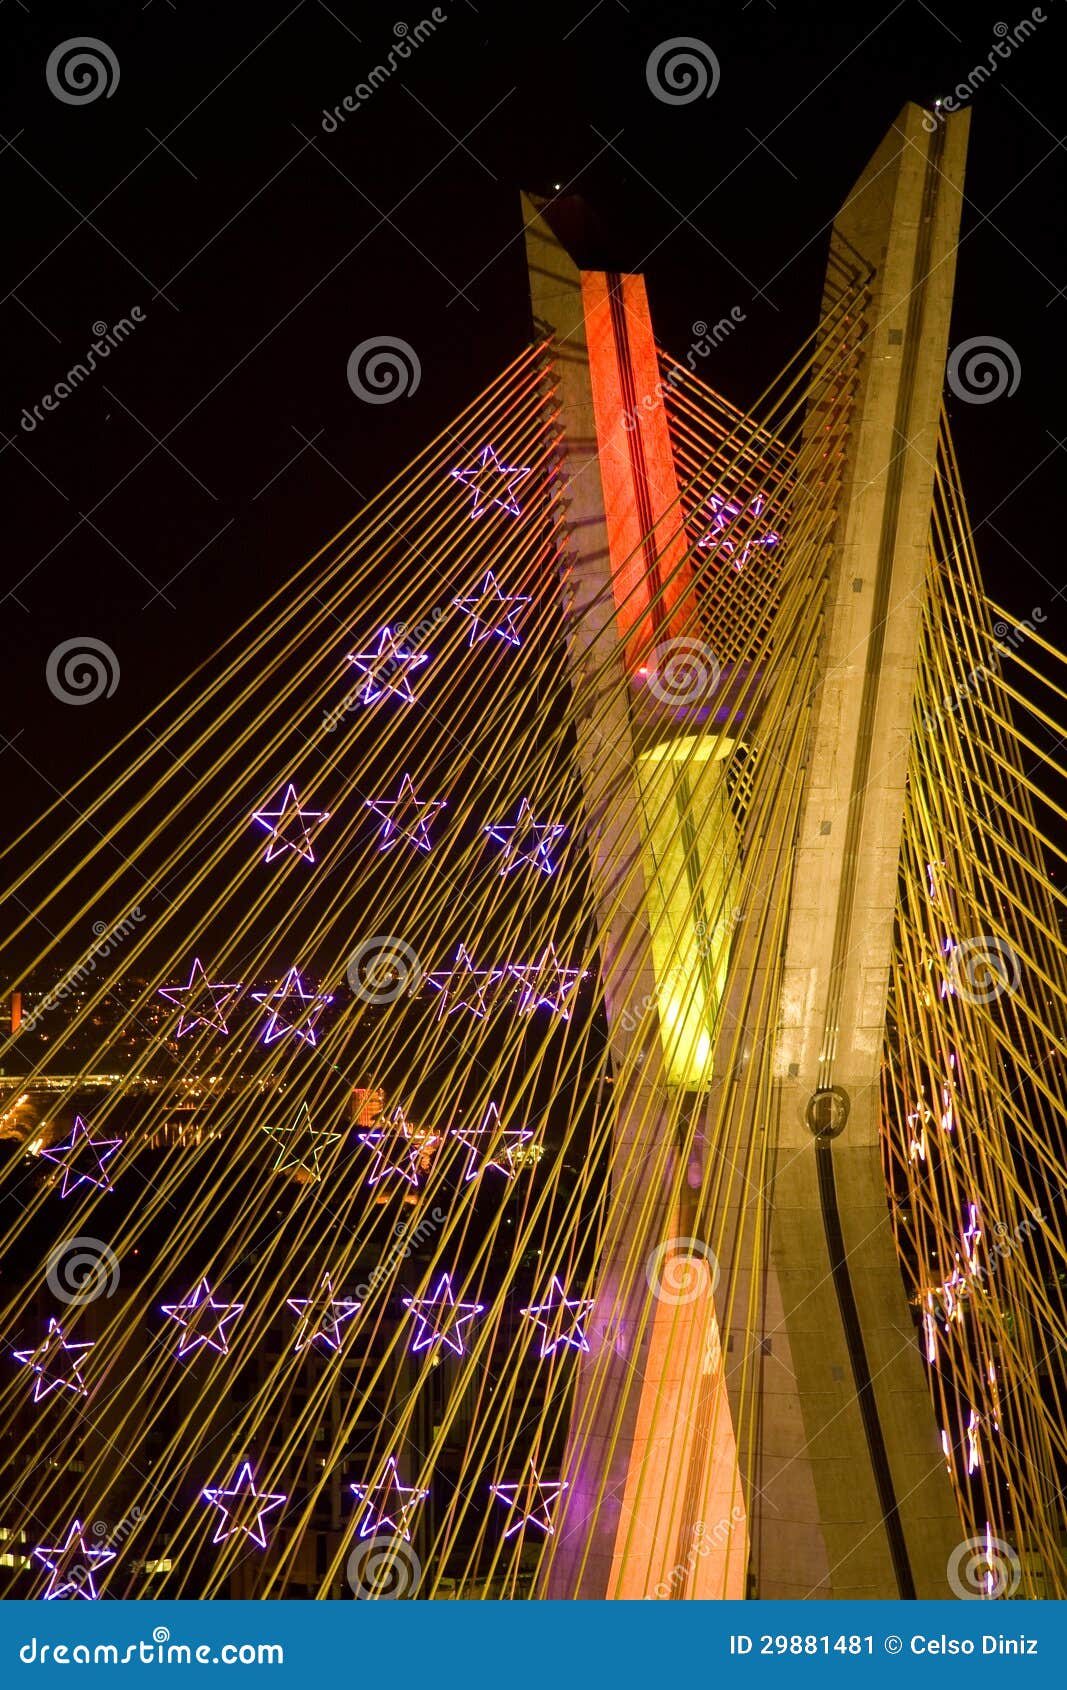 awesome bridge lit up at night